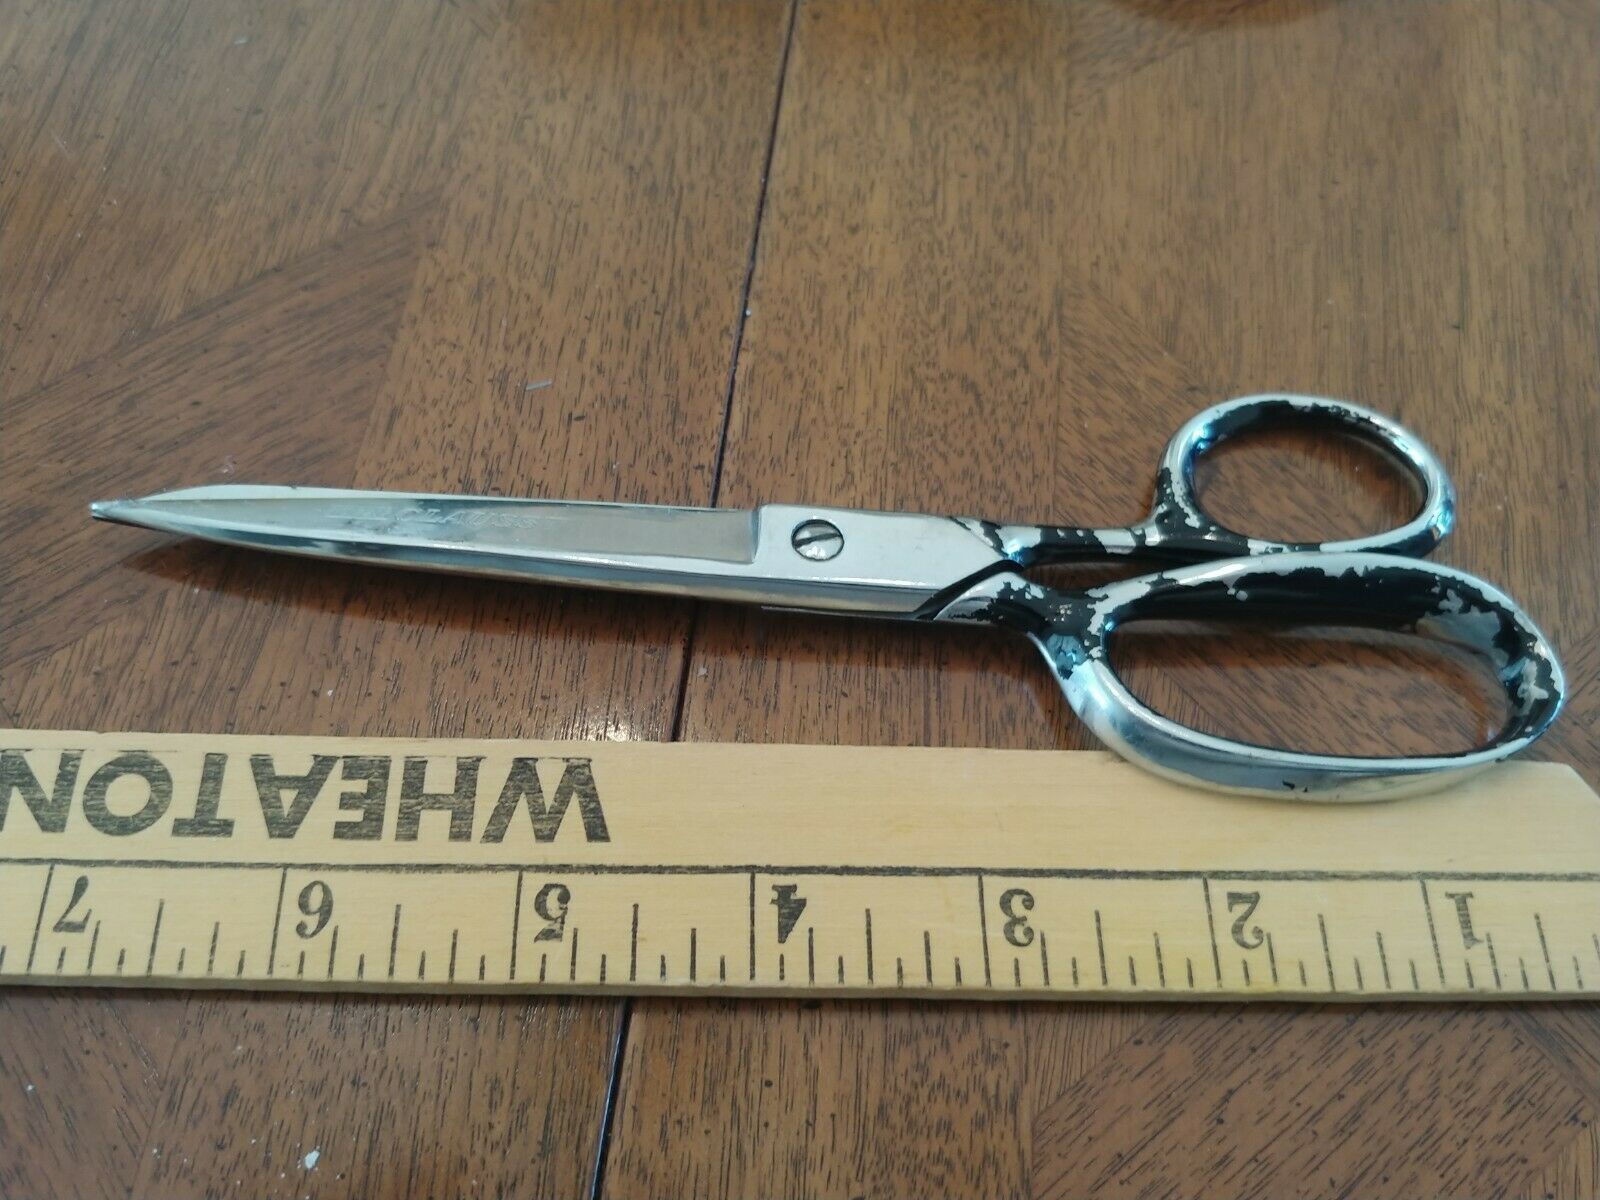 Vintage Metal Scissors Teacher Scissors Clauss Fremont 4268 3